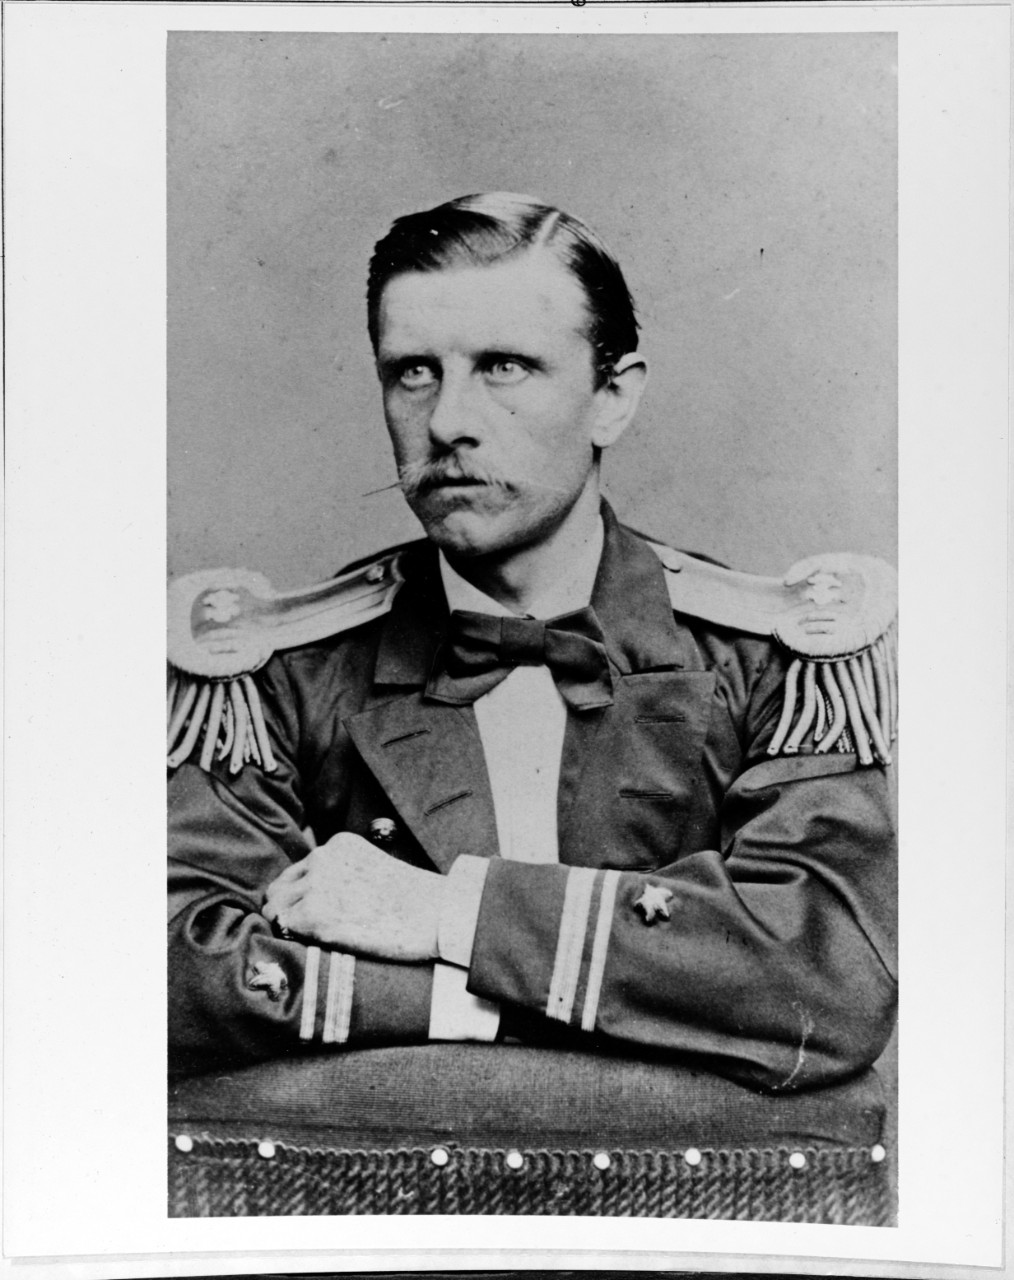 Lieutenant Oscar W. Farenholt, USN, circa 1870. 